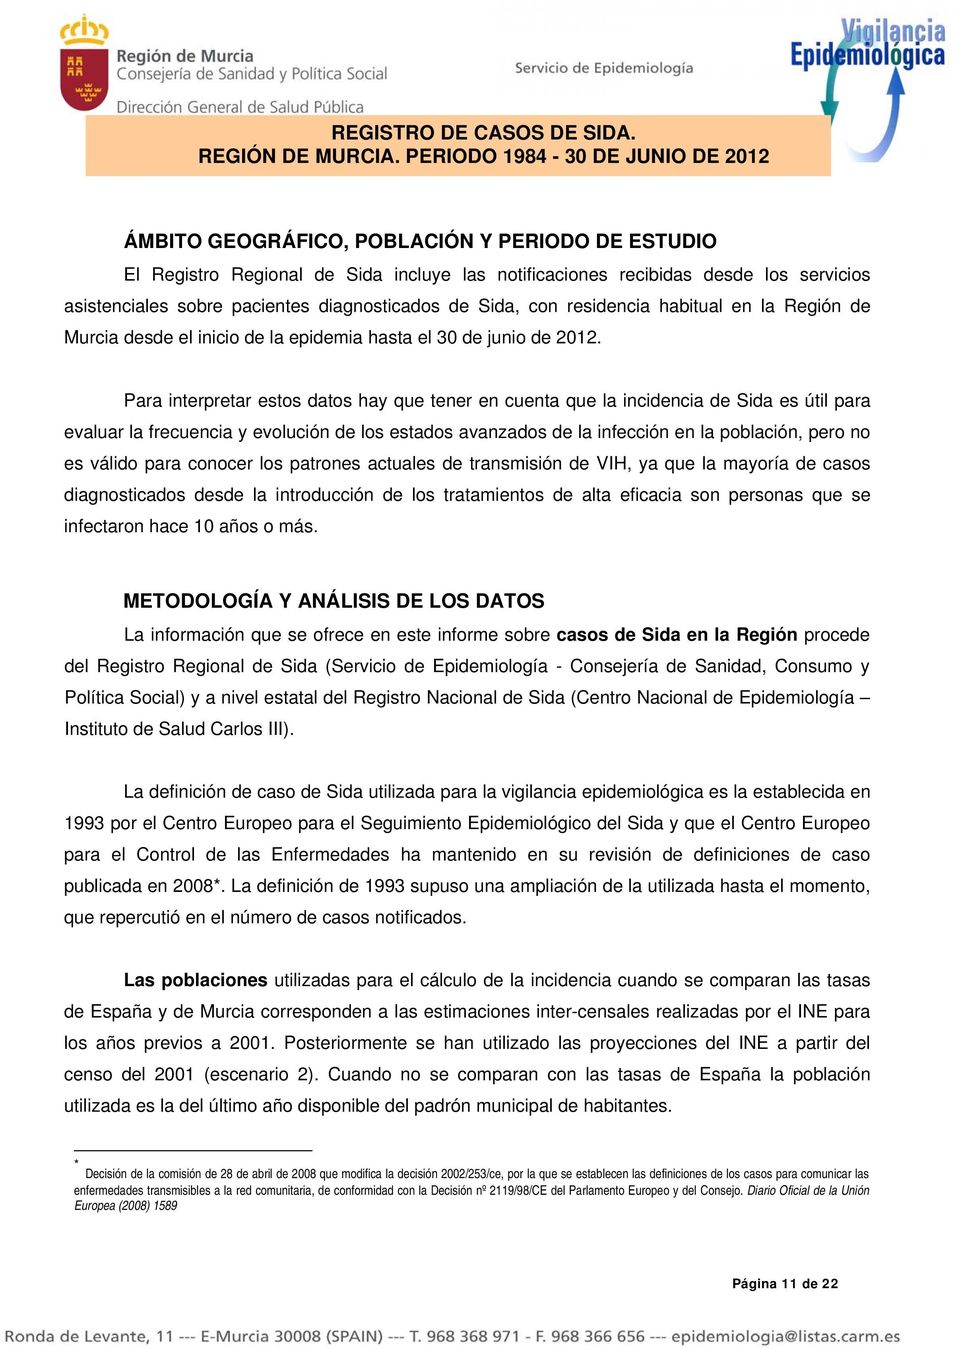 diagnosticados de Sida, con residencia habitual en la Región de Murcia desde el inicio de la epidemia hasta el 30 de junio de 2012.